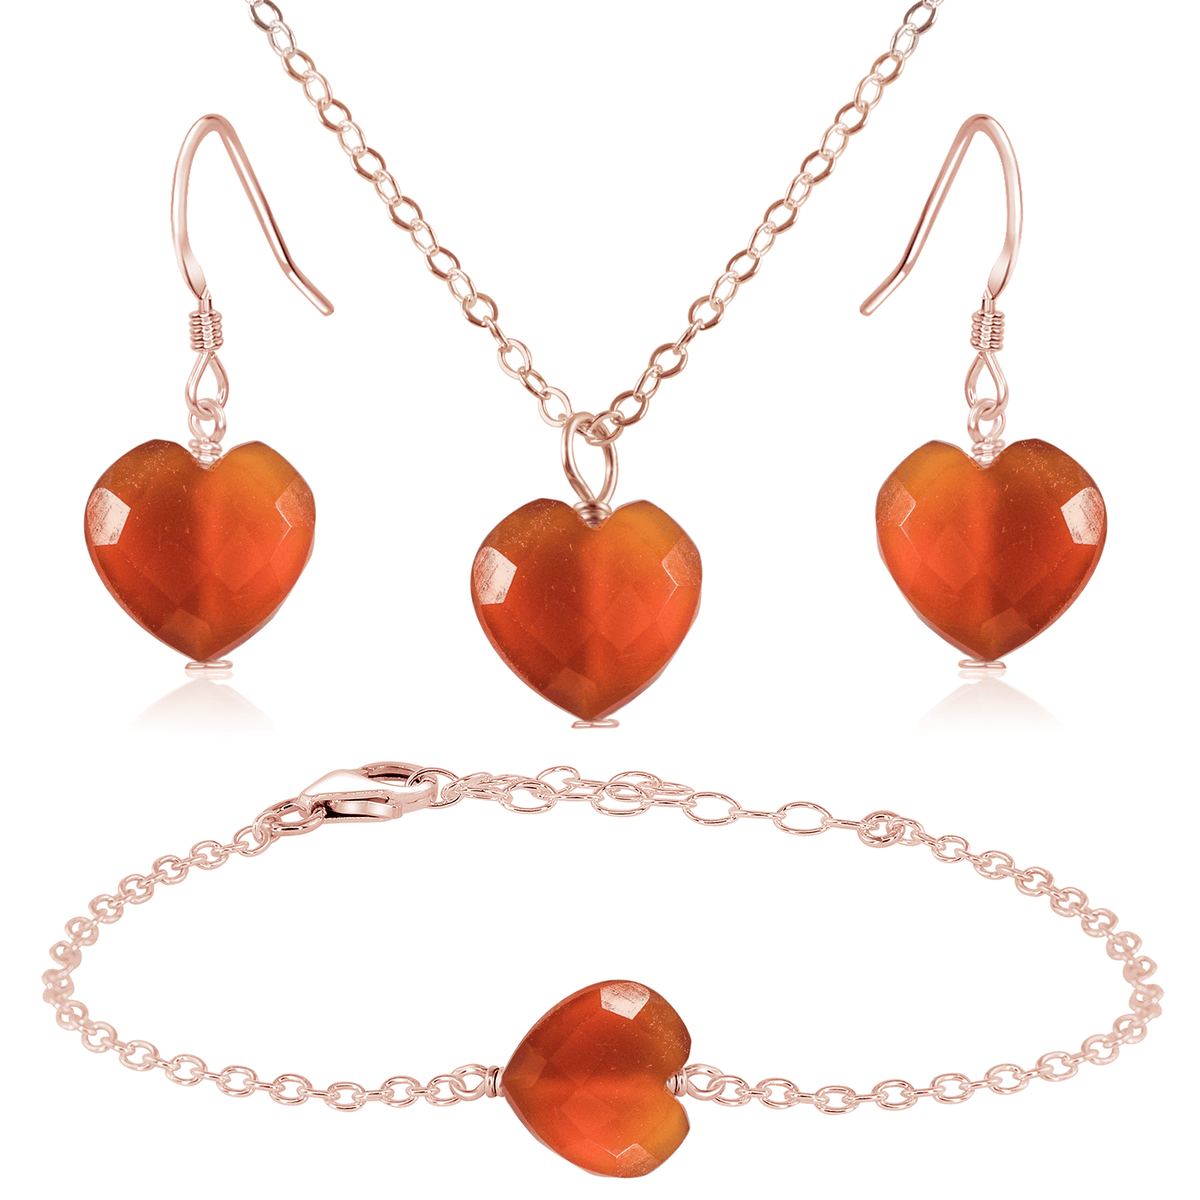 Carnelian Crystal Heart Jewellery Set - Carnelian Crystal Heart Jewellery Set - 14k Rose Gold Fill / Cable / Necklace & Earrings & Bracelet - Luna Tide Handmade Crystal Jewellery